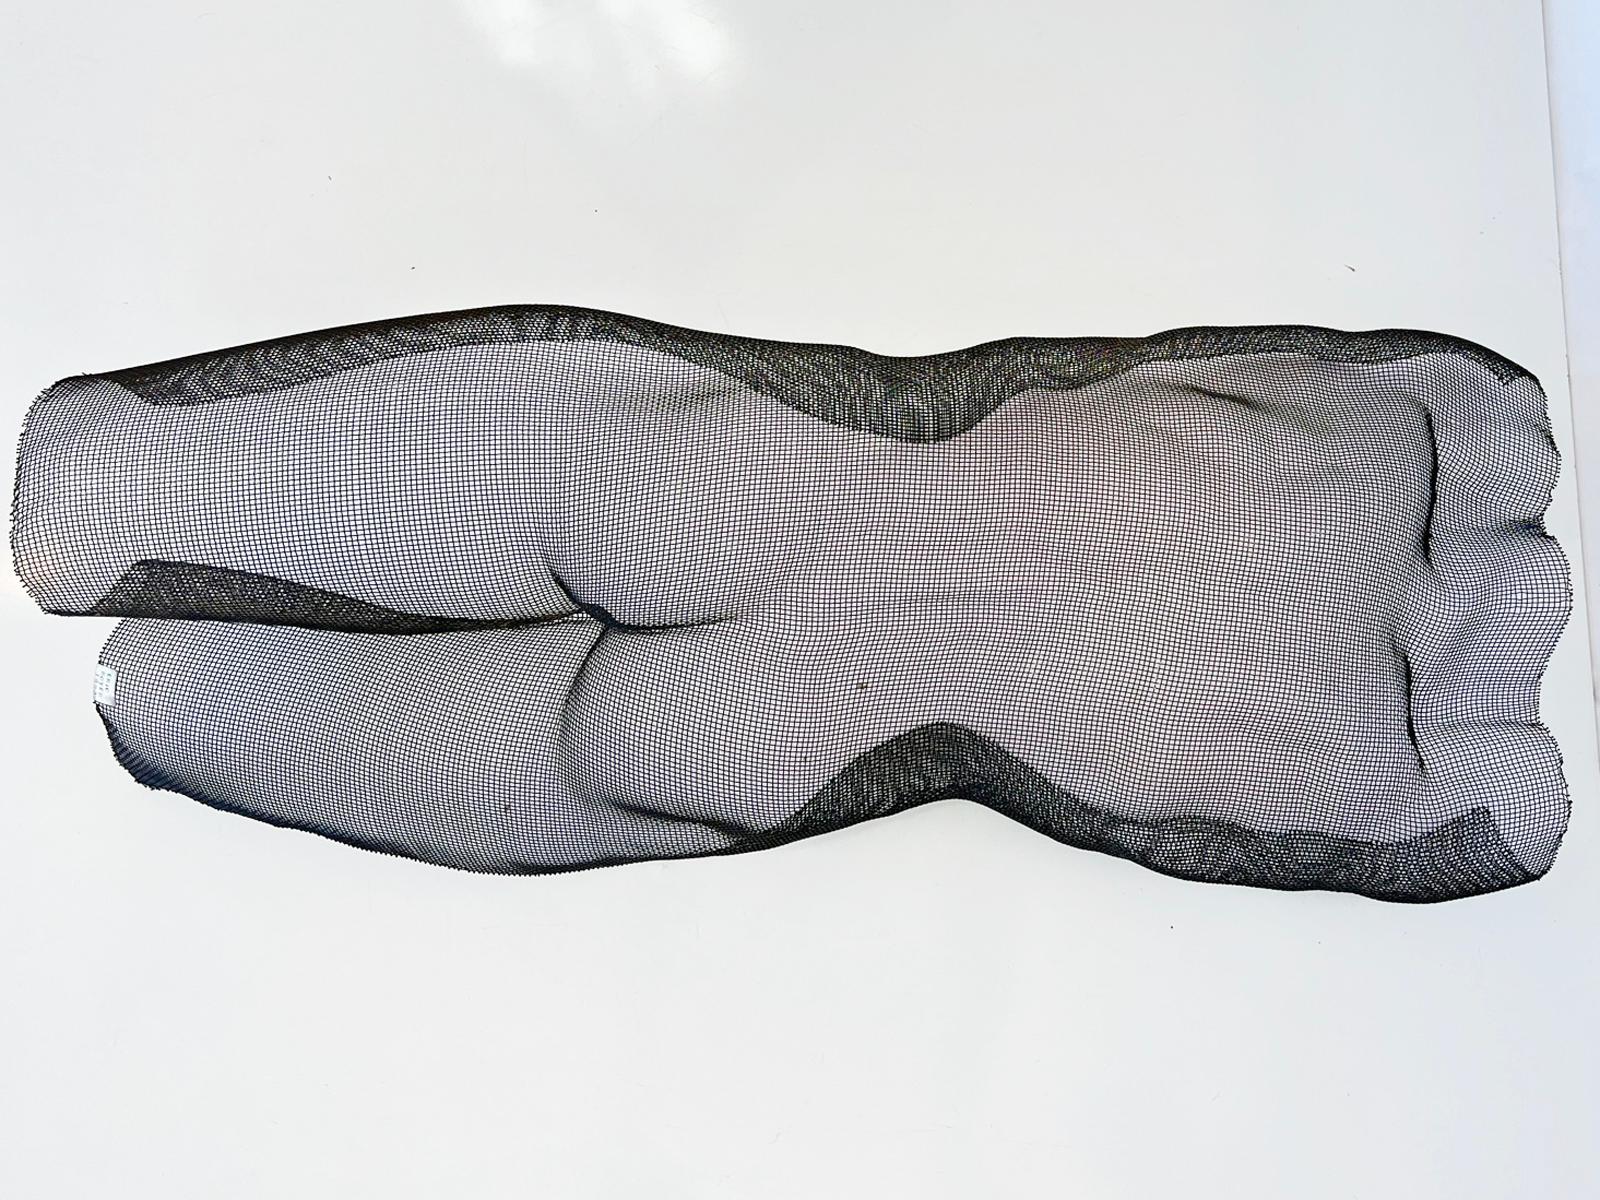 Sculpture figurative tridimensionnelle grandeur nature d'Eric Boyer, formée de grillage métallique, représentant le torse et les jambes d'un homme nu. Cette pièce est très légère, et conçue pour être accrochée à un mur. Une étiquette en métal